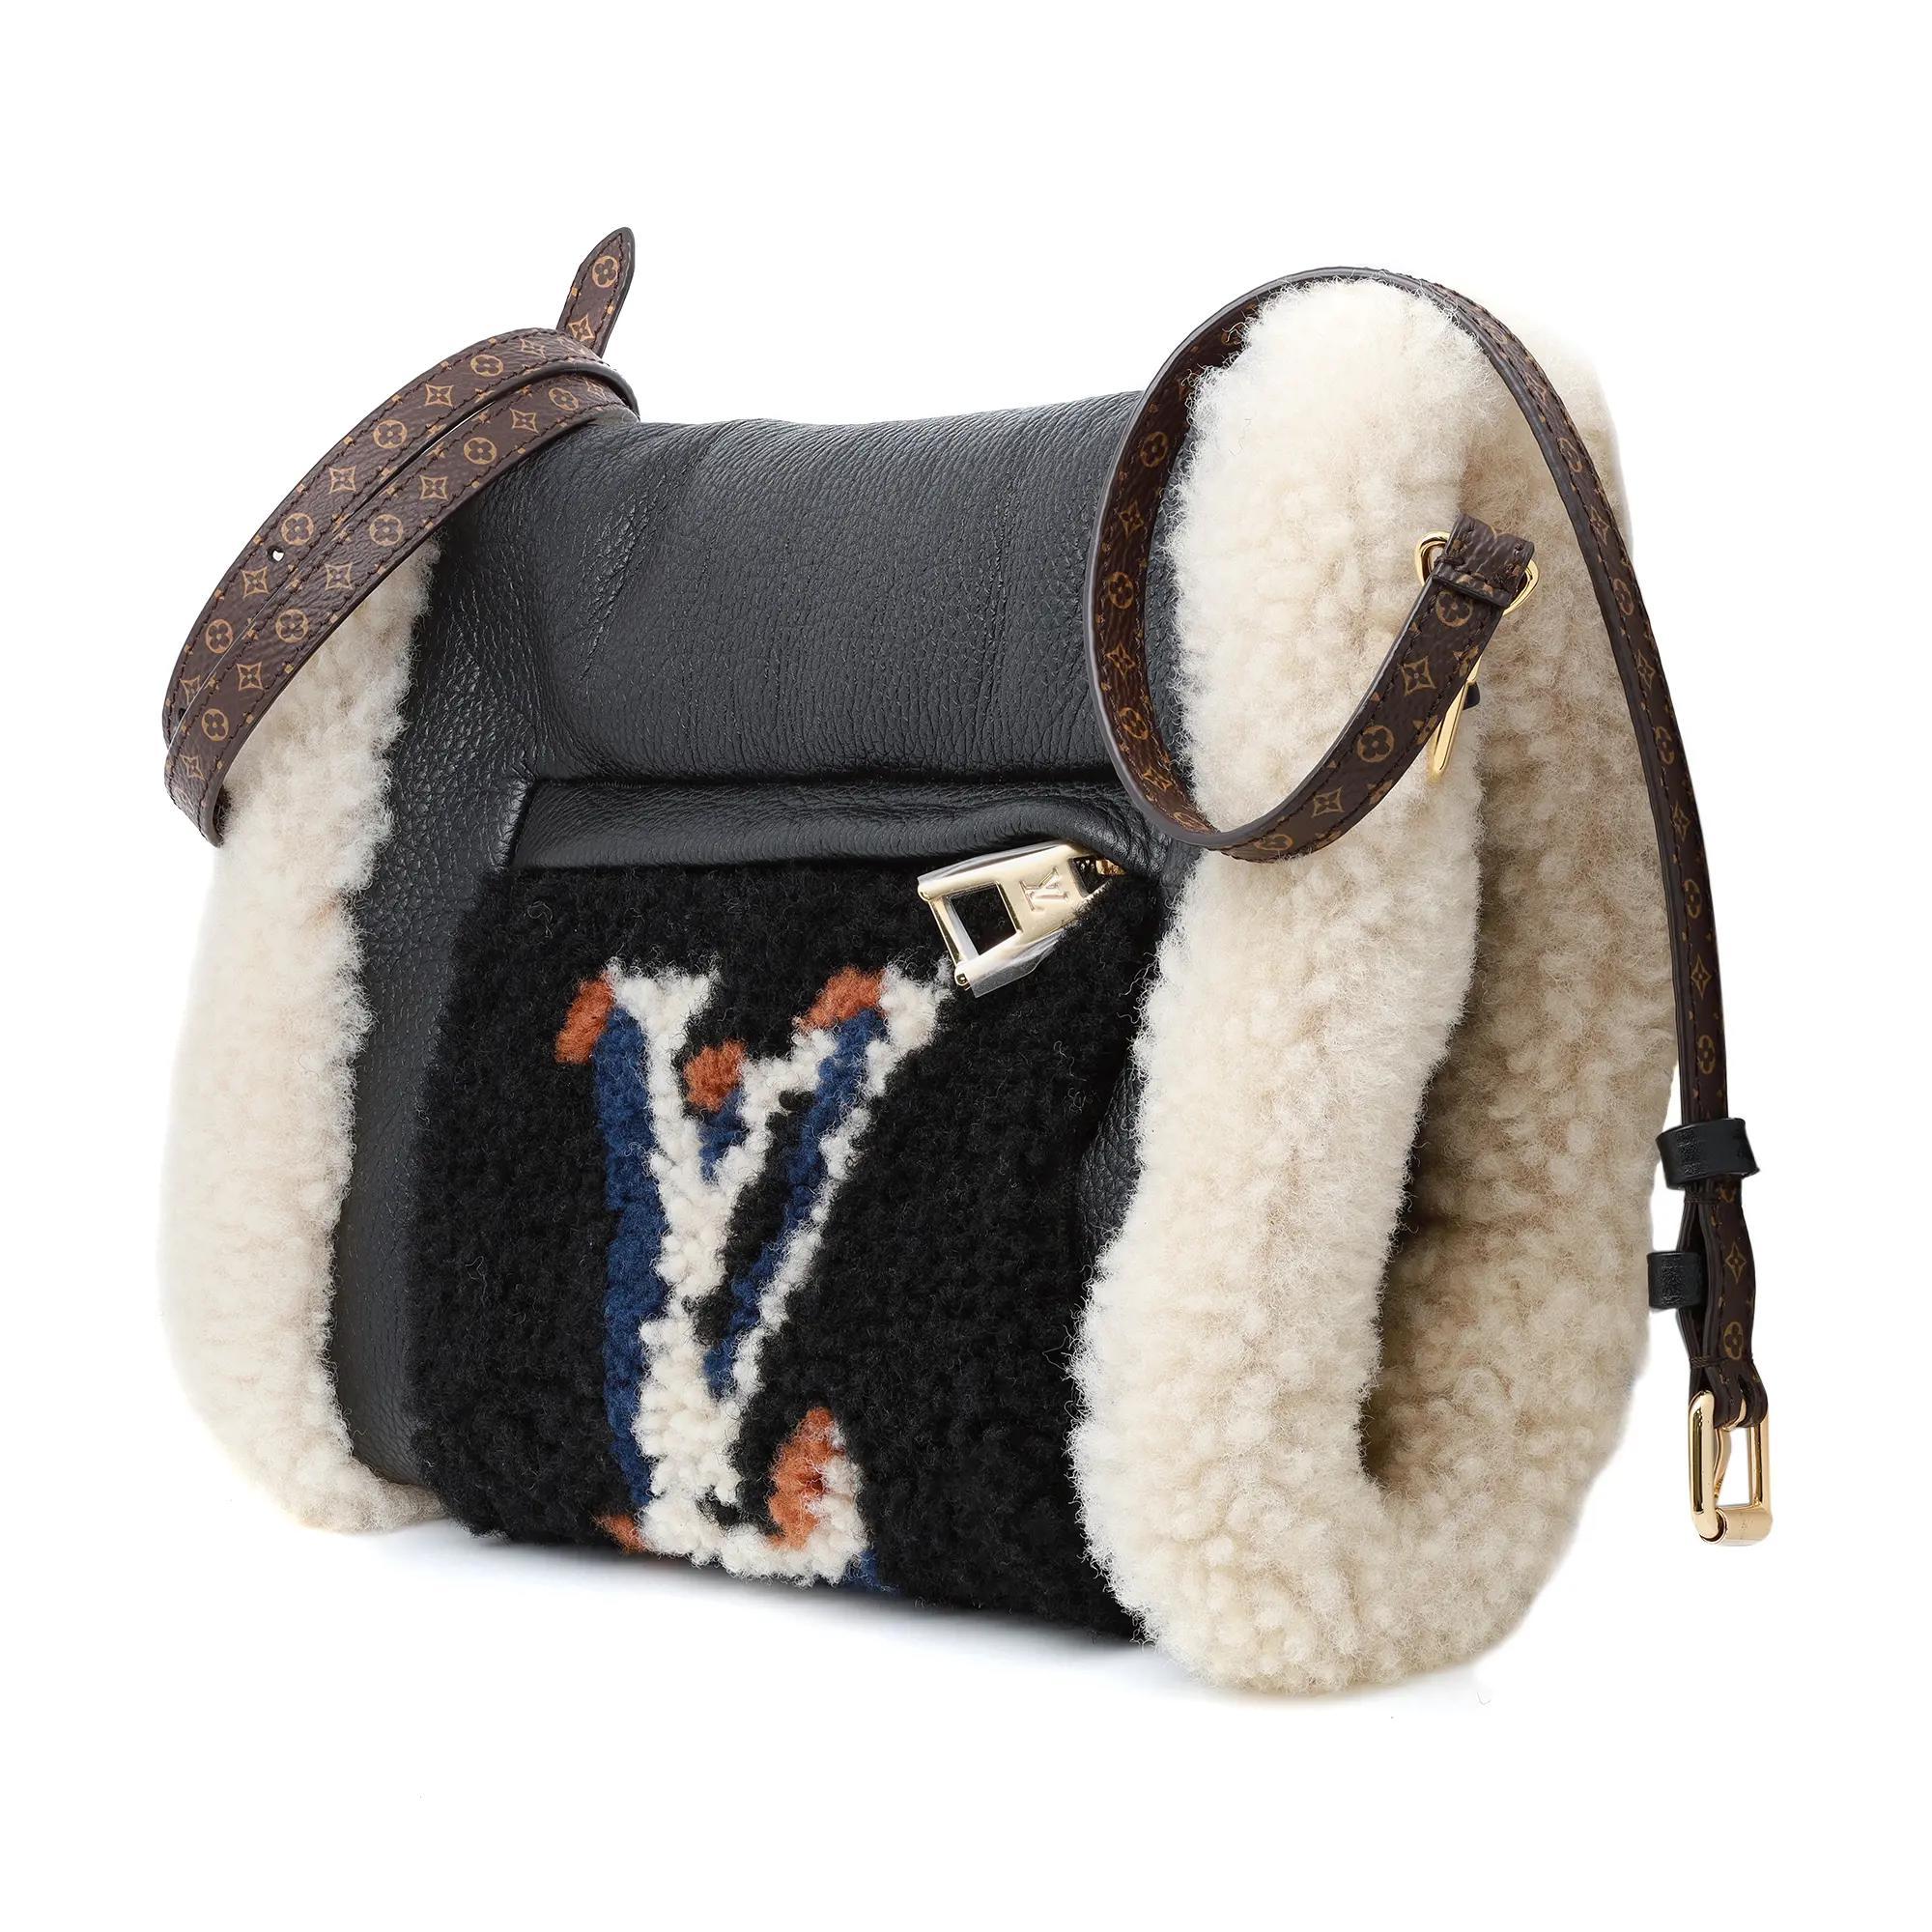 Louis Vuitton Calfskin Monogram Teddy Muffle Black Bag. Ce porte-monnaie iconique à la pointe de la mode se transforme en sac à bandoulière. En cuir grainé noir, il est orné d'un monogramme LV surdimensionné sur un molleton de shearling. La poche